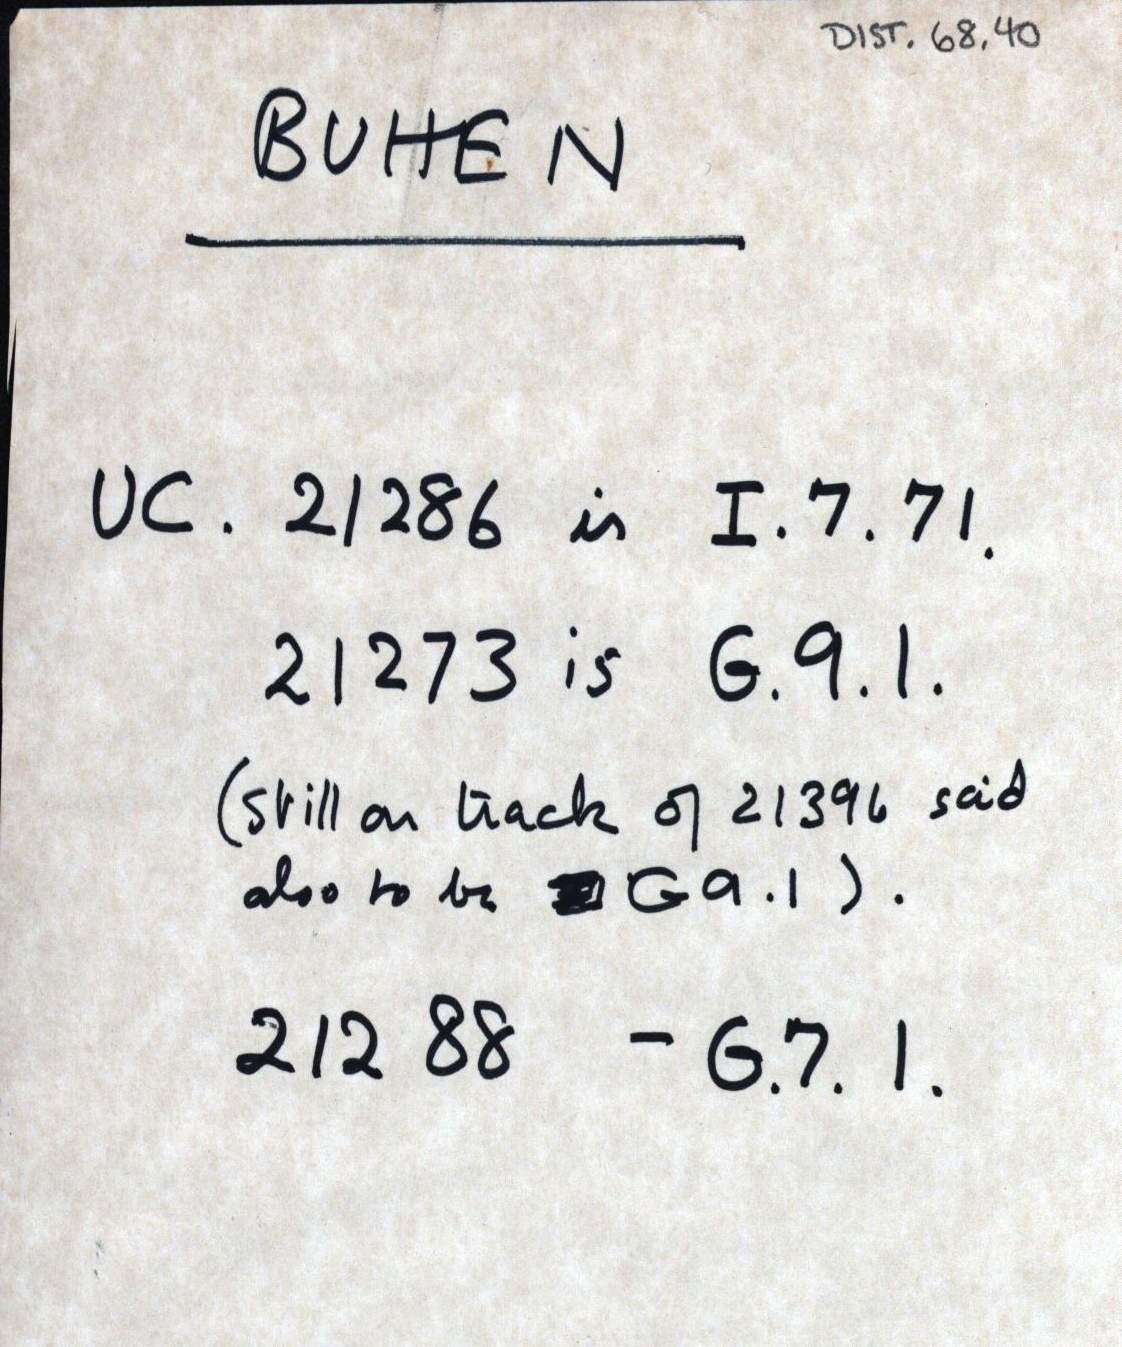 1959-74  Buhen DIST.68.40